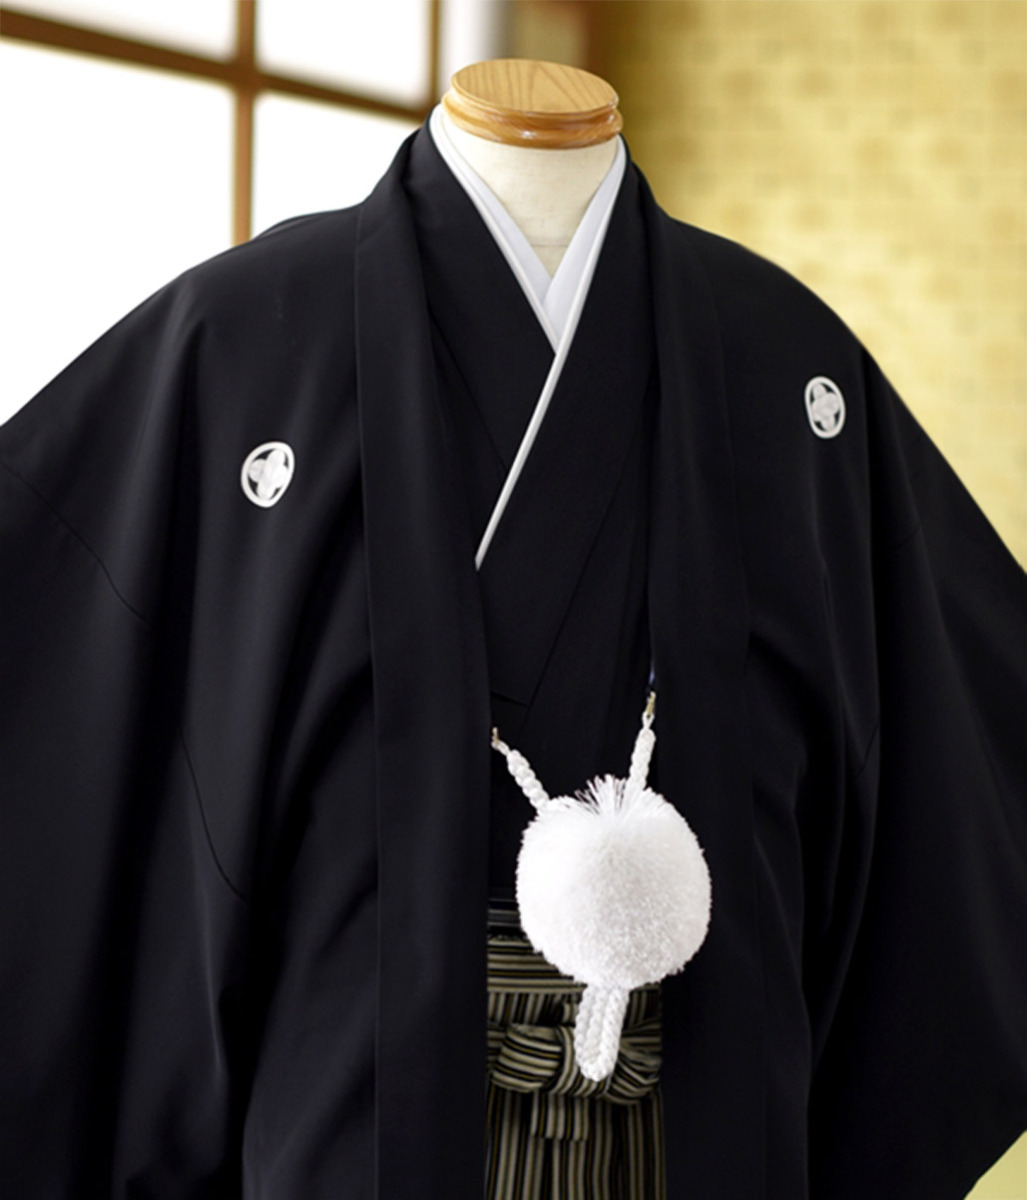  чёрный . есть hakama в аренду перо тканый hakama рост 160cm~185cm церемония окончания свадьба новый . день совершеннолетия мужчина кимоно в аренду . есть hakama hakama в аренду большой размер маленький размер красочное свадебное кимоно свадебное кимоно сиромуку 